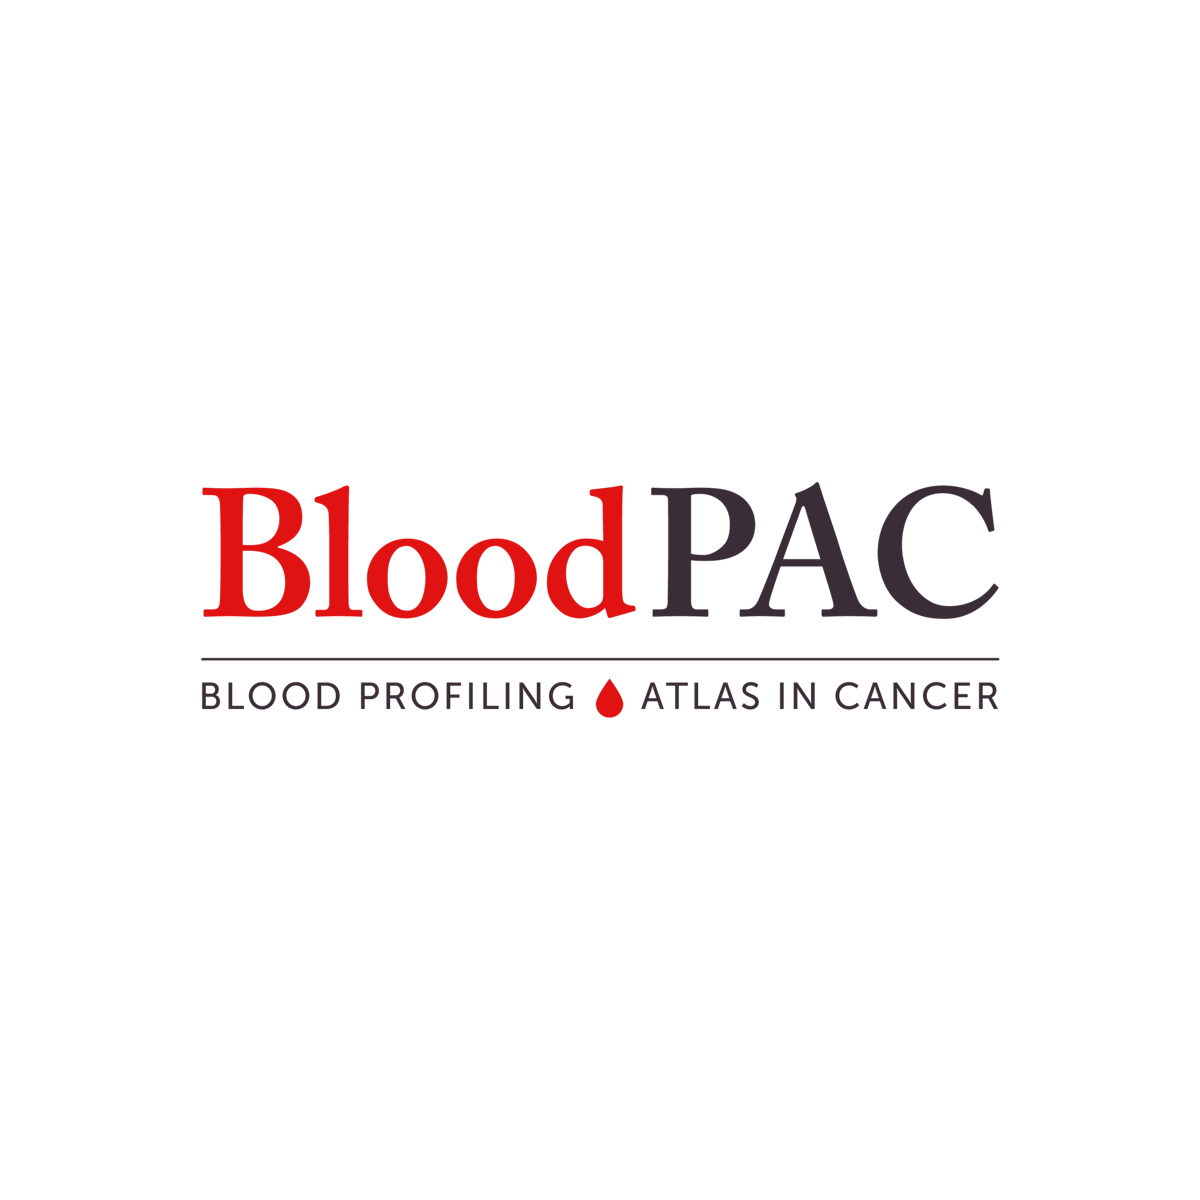 BloodPAC organization seeks to advance the field of liquid biopsy